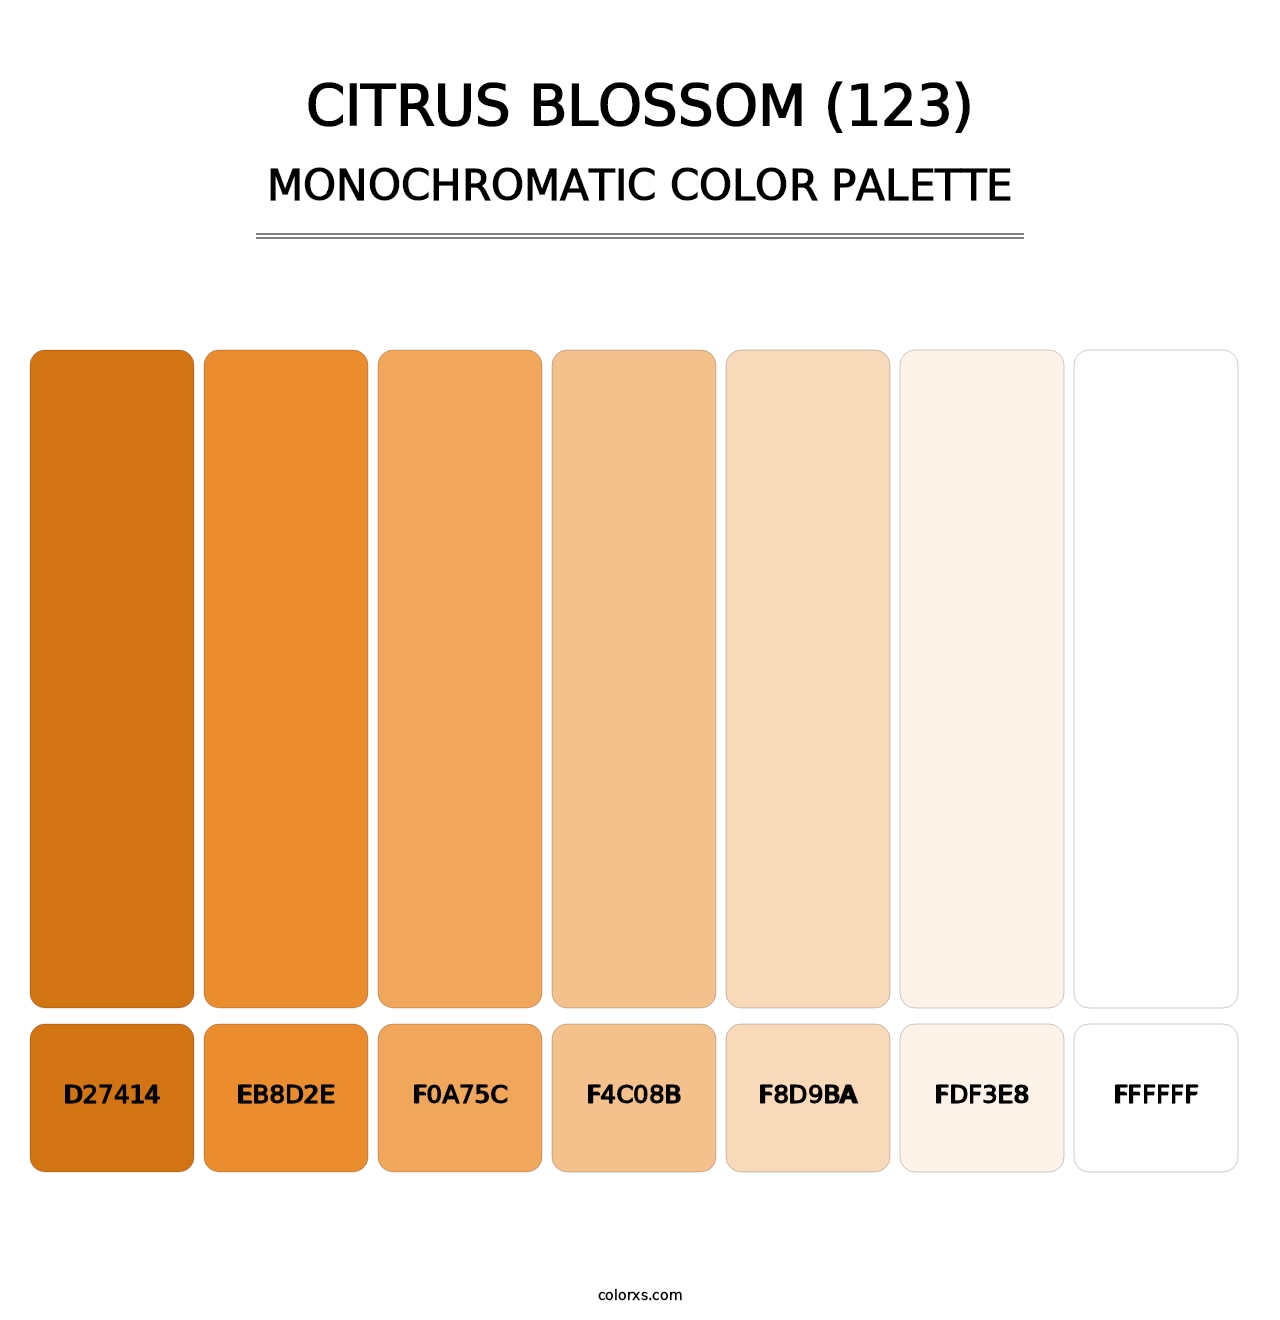 Citrus Blossom (123) - Monochromatic Color Palette